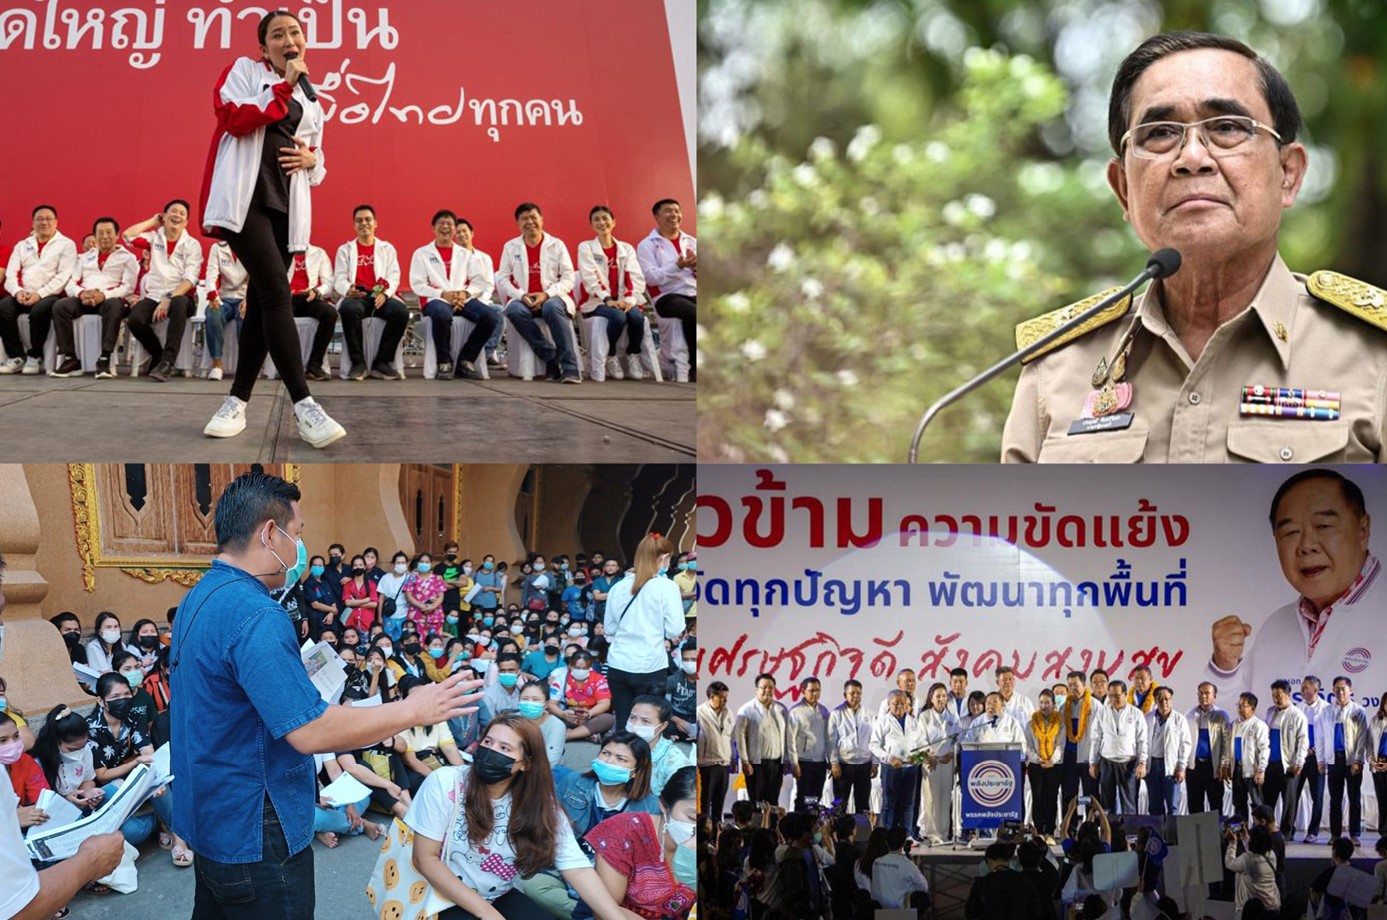 ထိုင်းရွေးကောက်ပွဲတွင် ရွှေ့ပြောင်းလုပ်သားအရေး ဖြေရှင်းပေးမည့် အစိုးရအား မျှော်လင့်